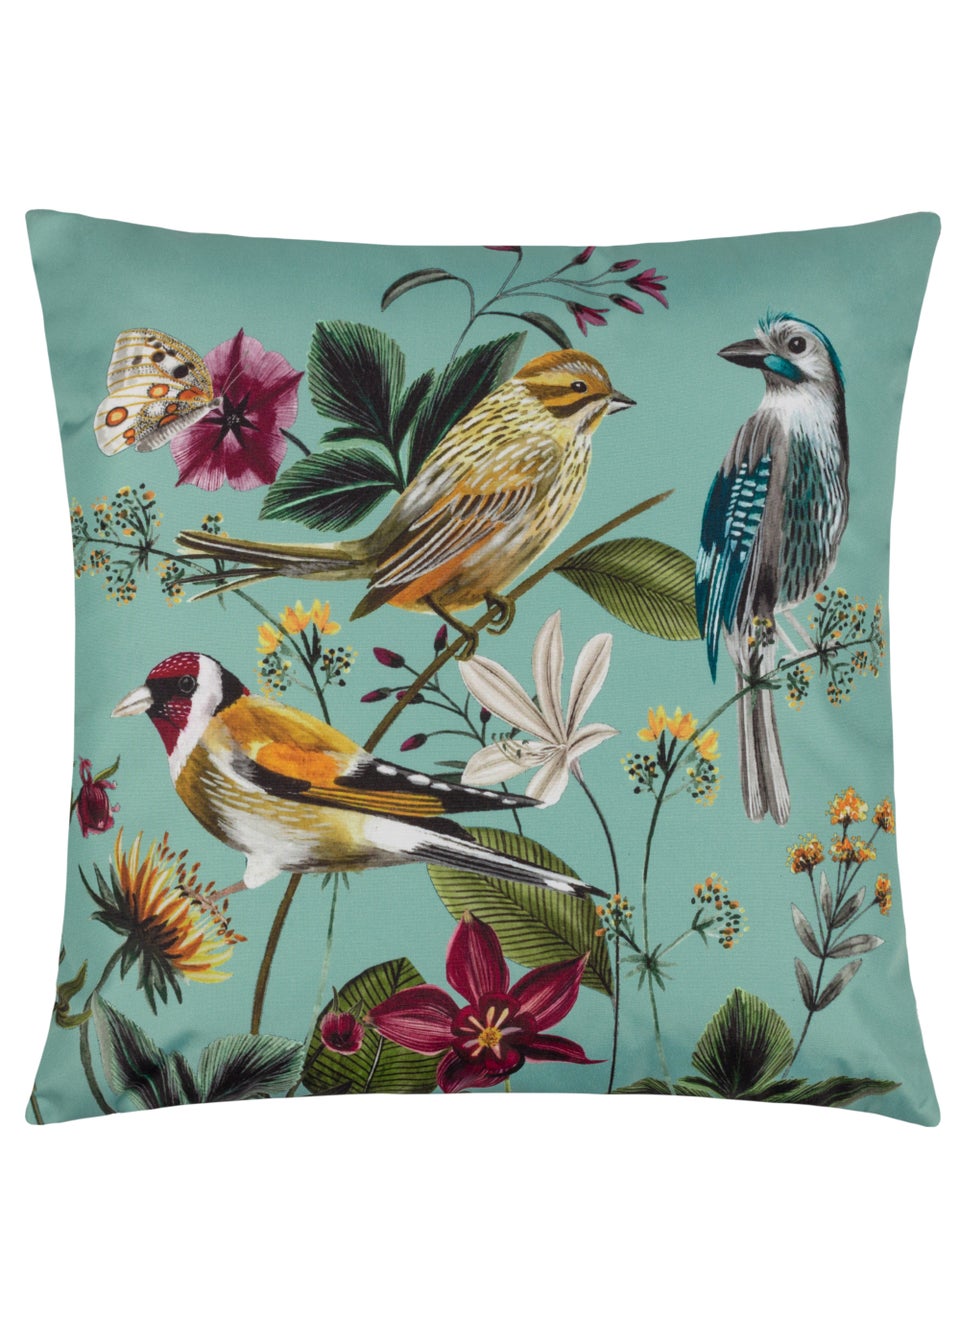 Wylder Nature Midnight Garden Birds Outdoor Filled Cushion (43cm x 43cm x 8cm)